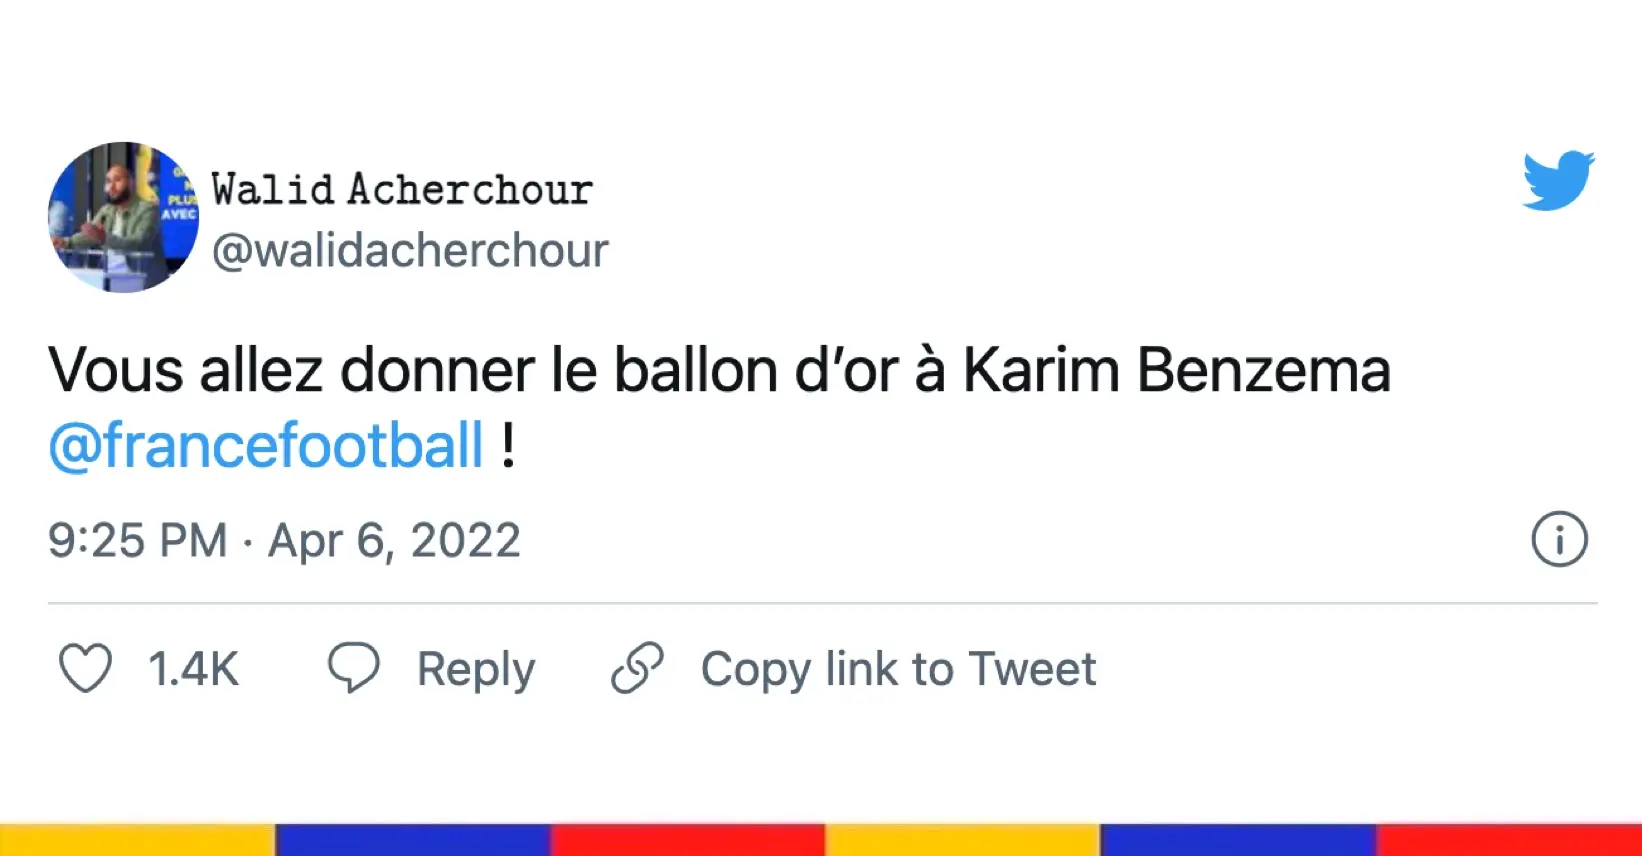 Le grand n’importe quoi des réseaux sociaux : triplé de Karim Benzema contre Chelsea